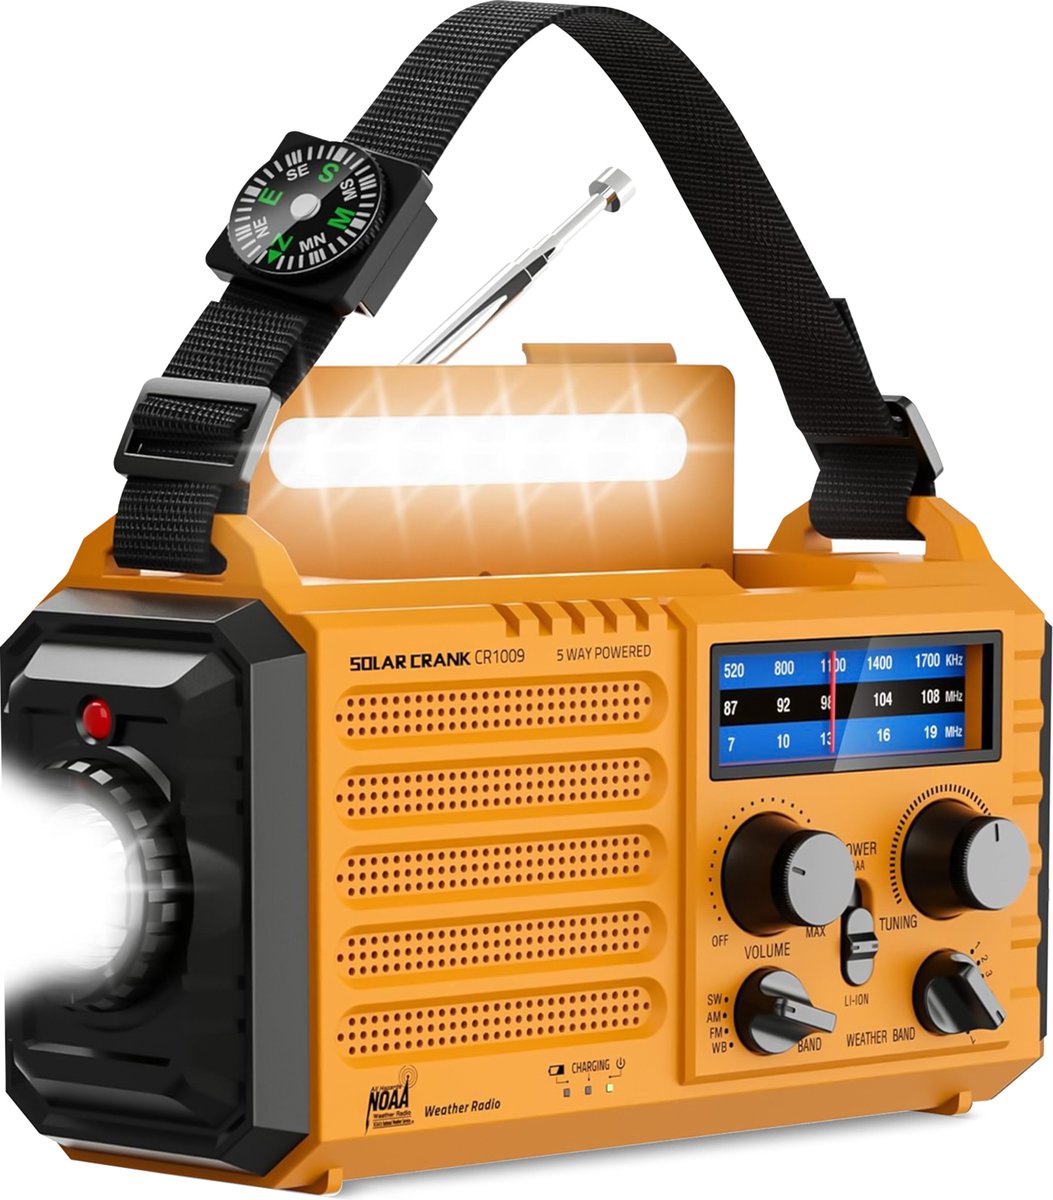 Noodradio - Radio Op Batterijen Voor Rampen - 5000 mAh oplaadbare powerbank - Led-zaklamp - USB-oplader voor mobiele telefoon - SOS-alarm - Kompas voor camping en outdoor